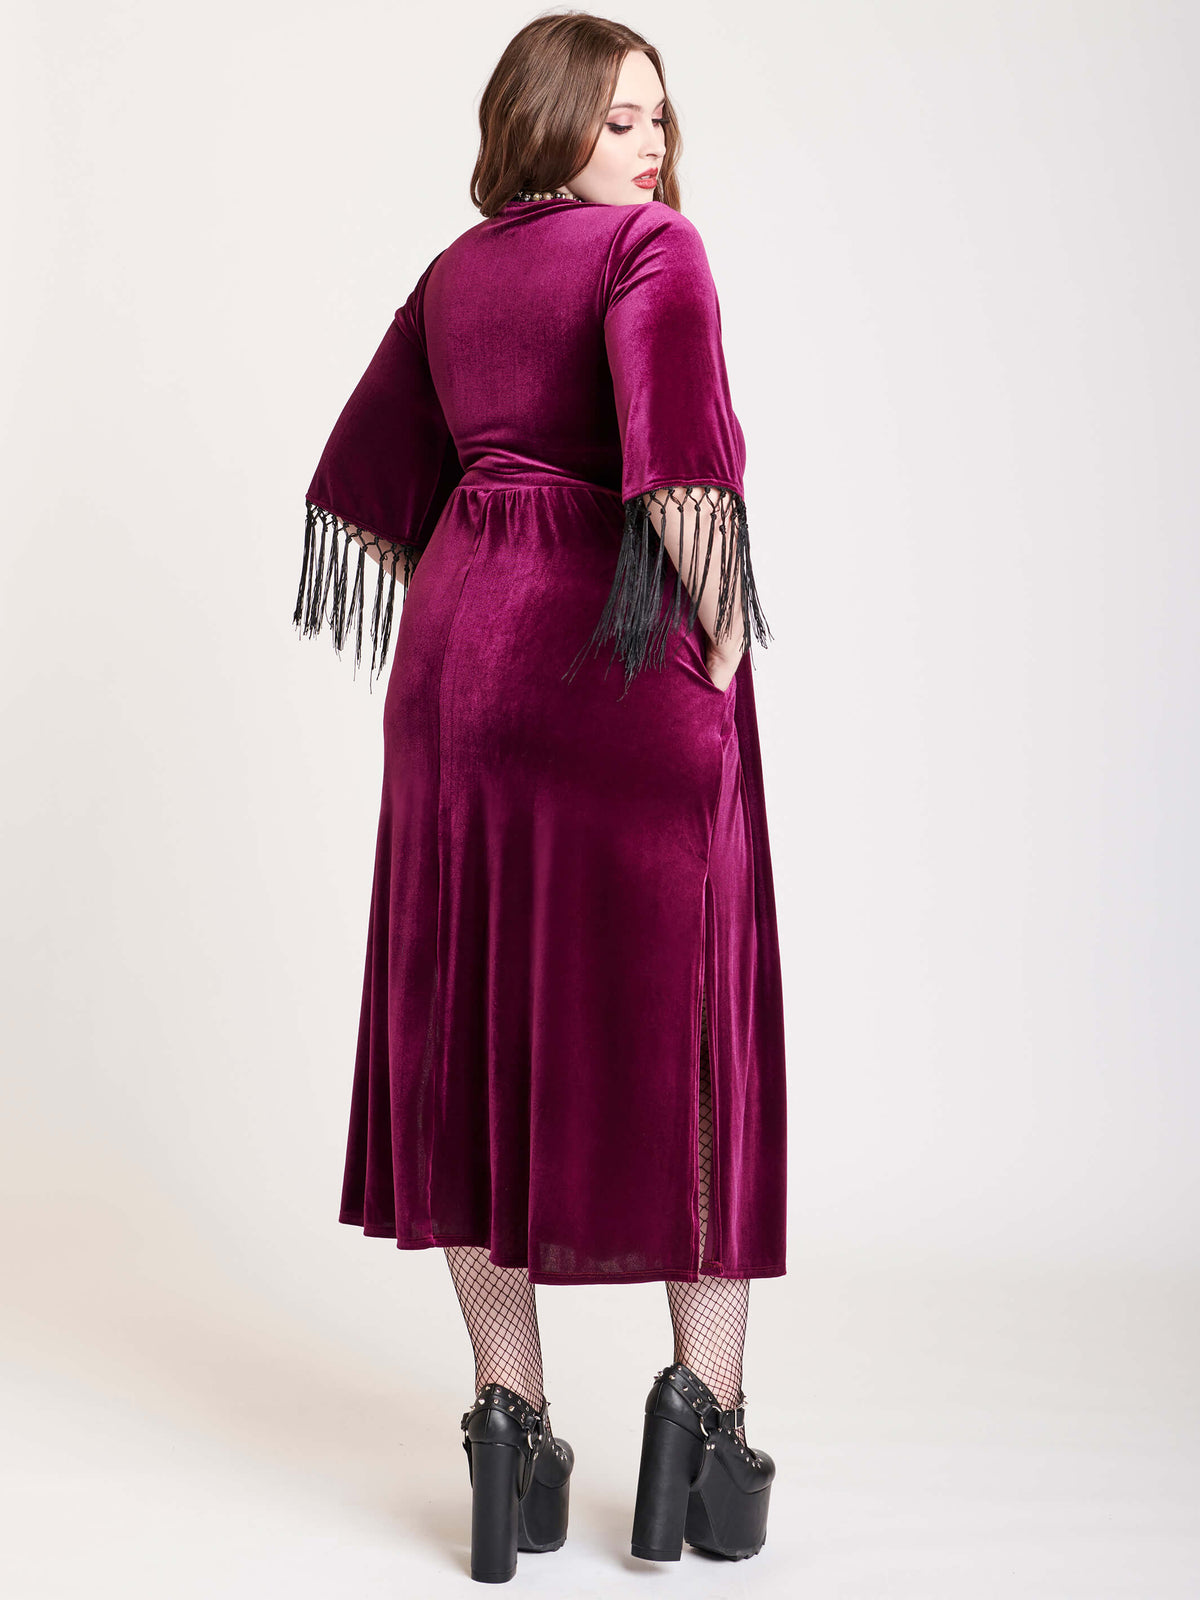 burgundy velvet dress with fringe at cleeve hem